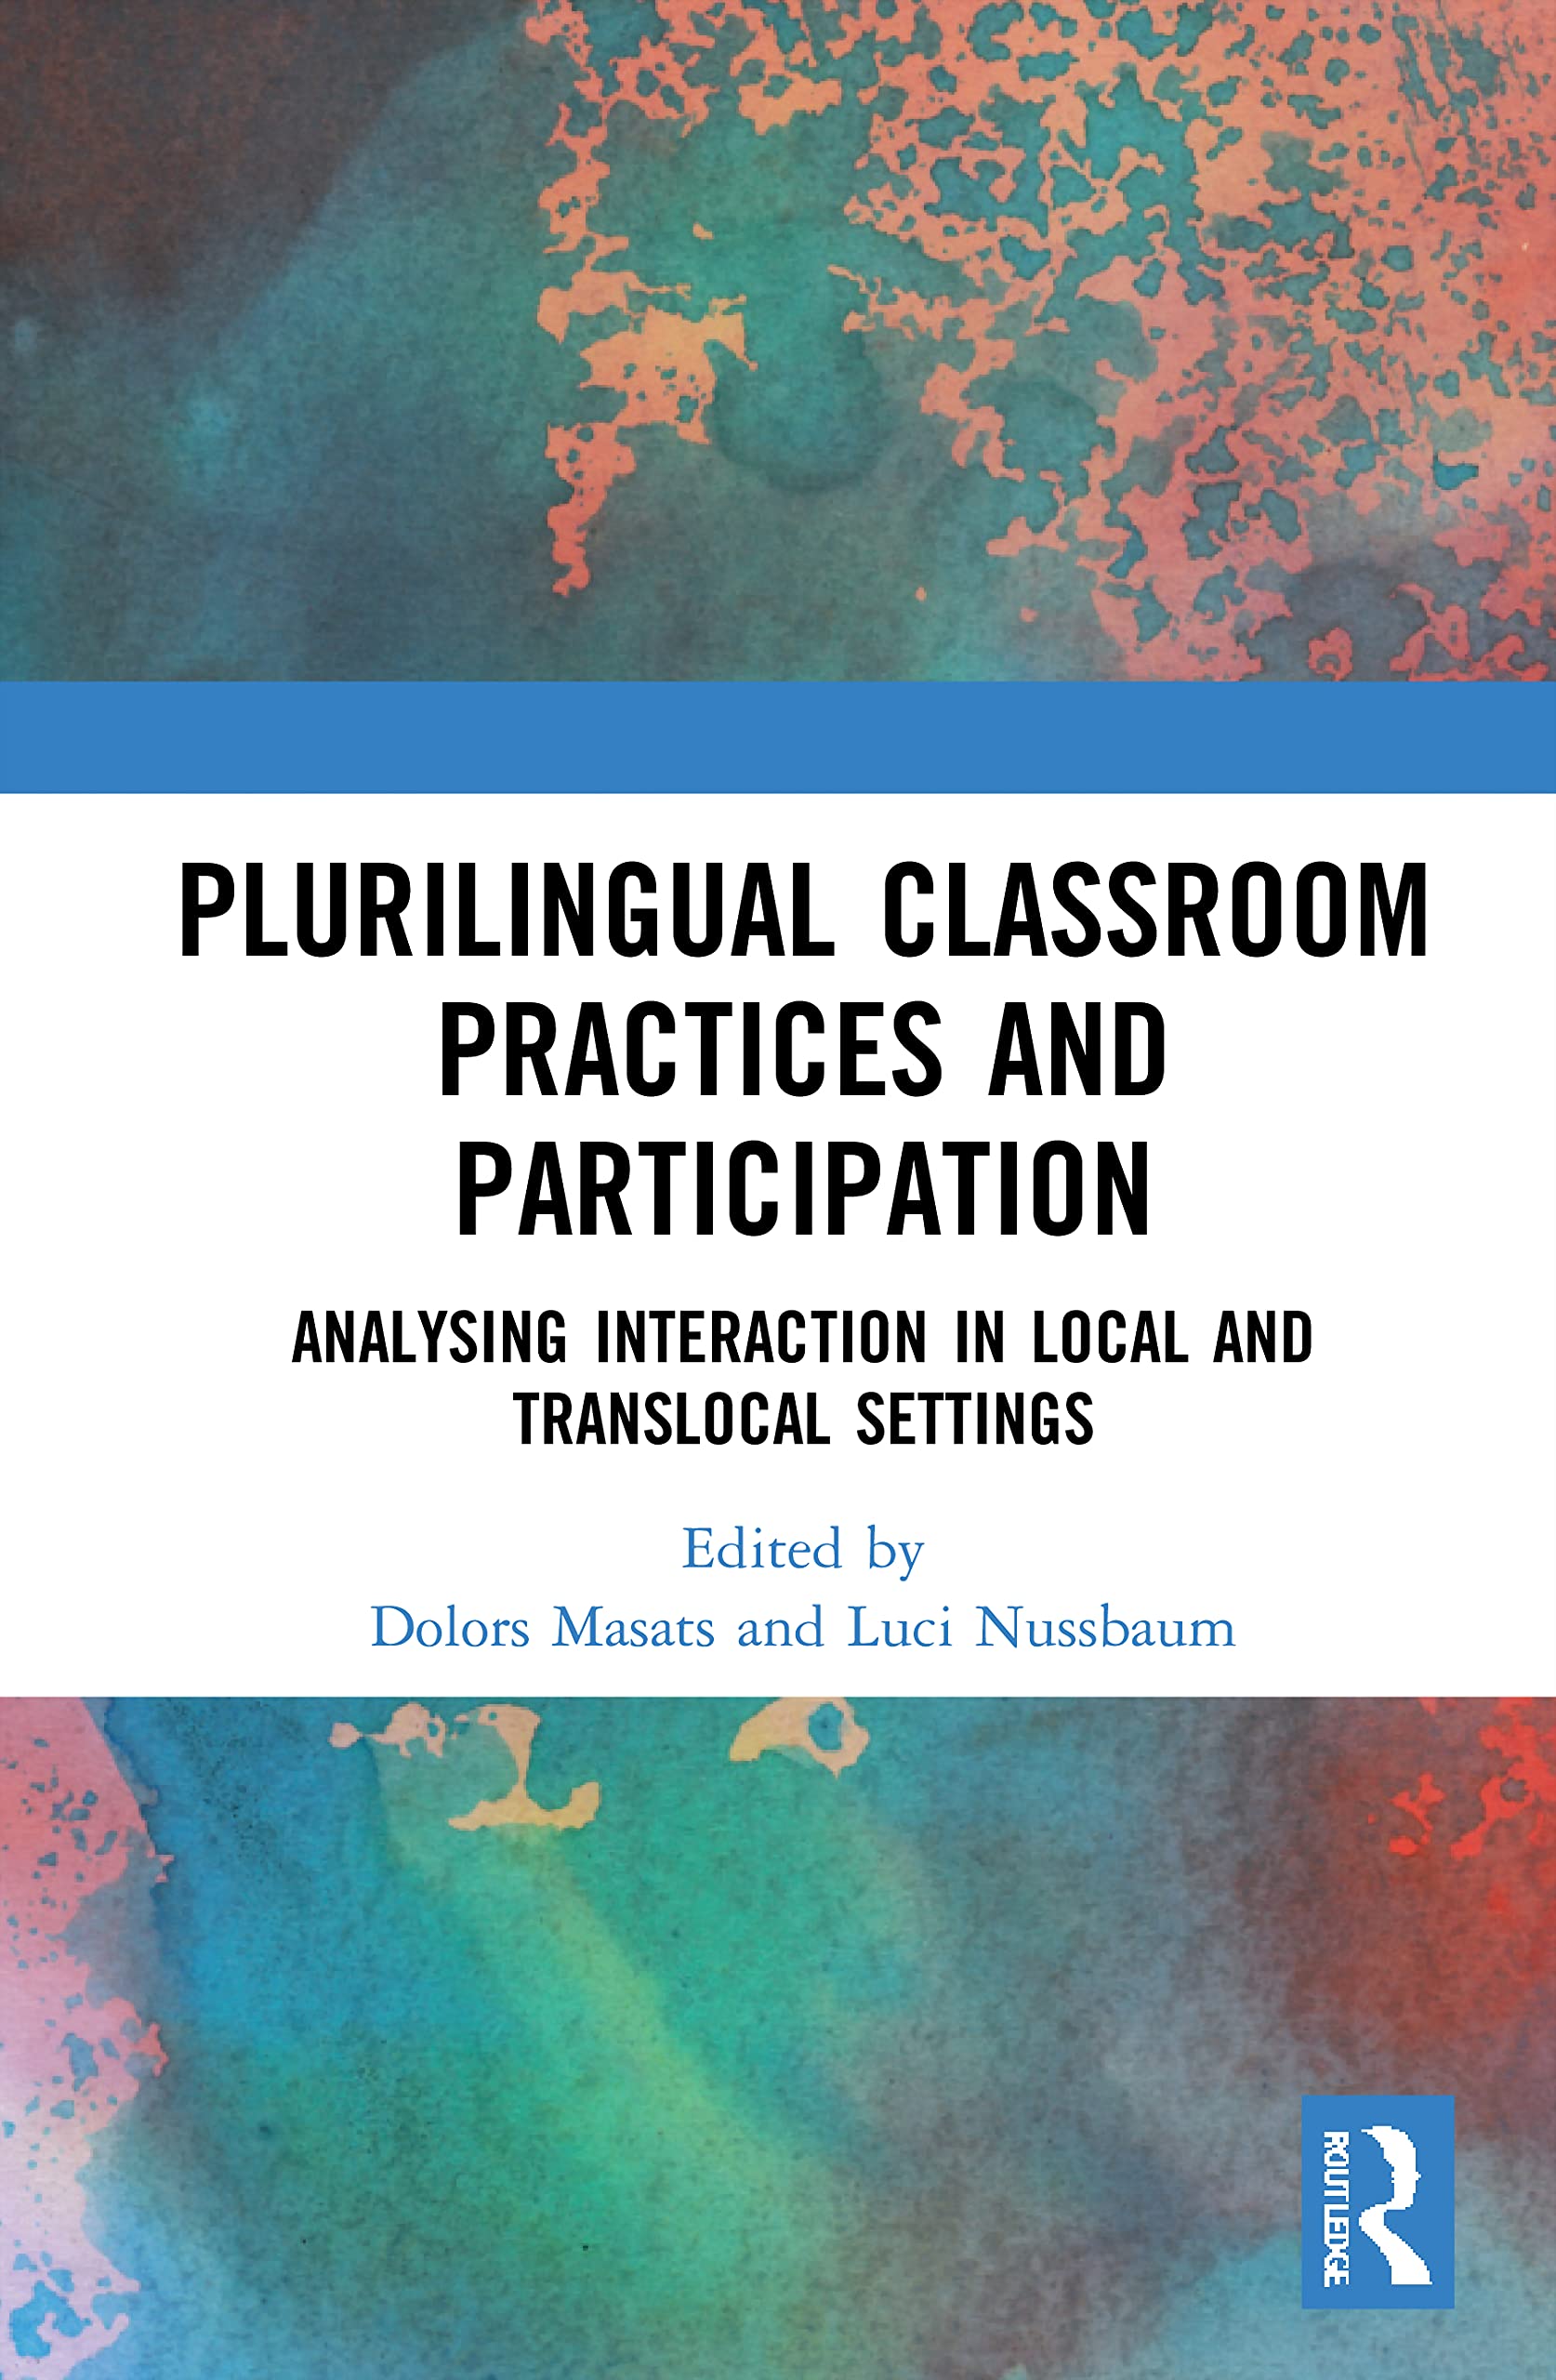 Imagen de portada del libro Plurilingual Classroom Practices and Participation